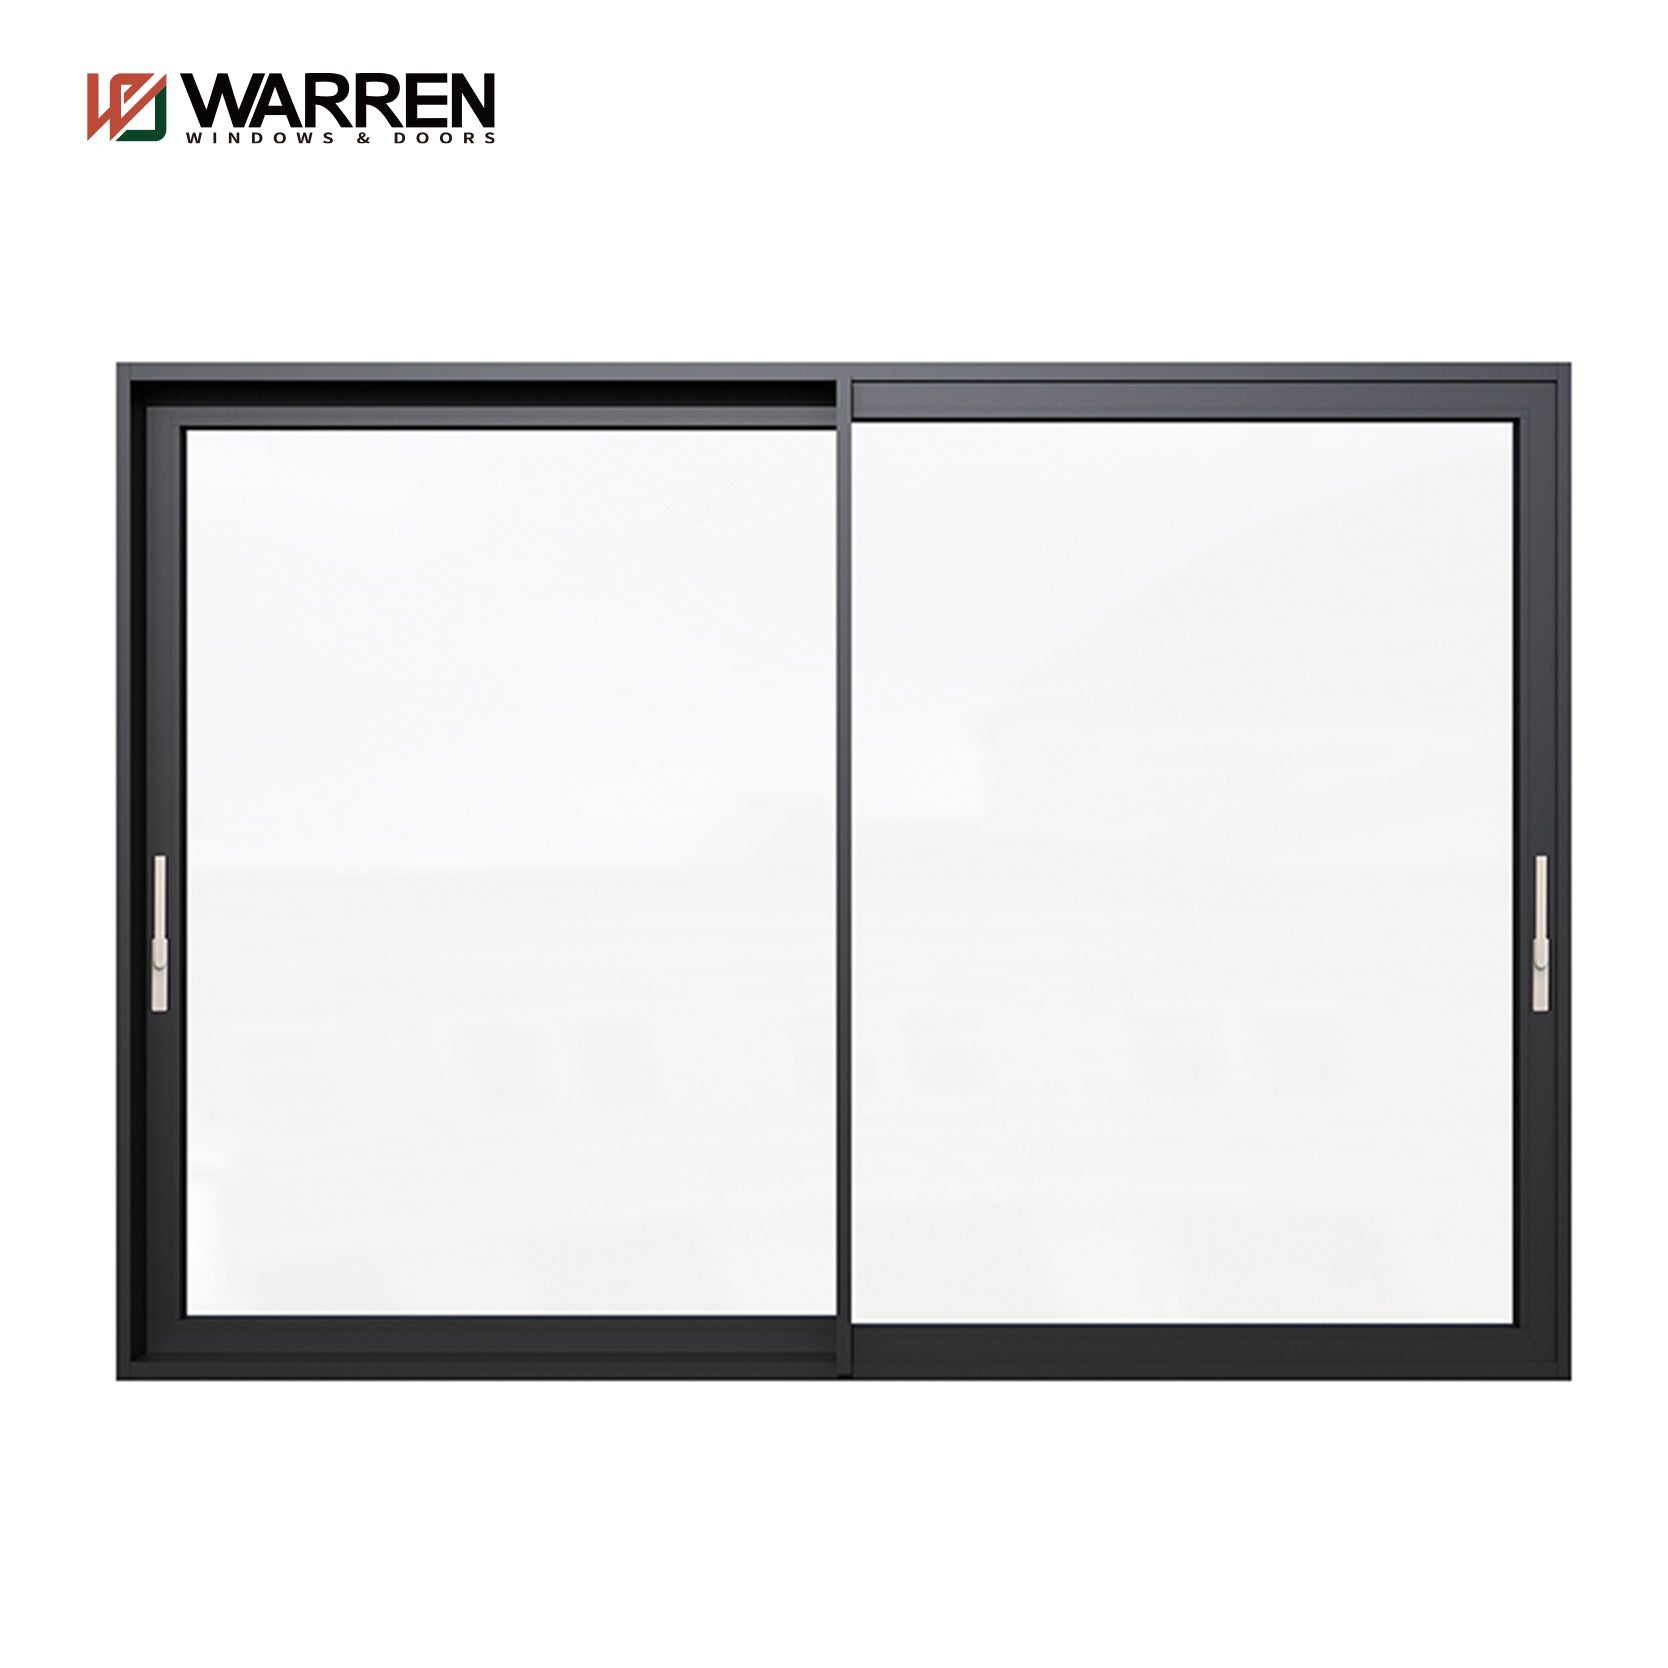 Warren House Exterior Thermal Break Aluminium Profiles Glass Window And Door Heavy Duty Patio Sliding Doors